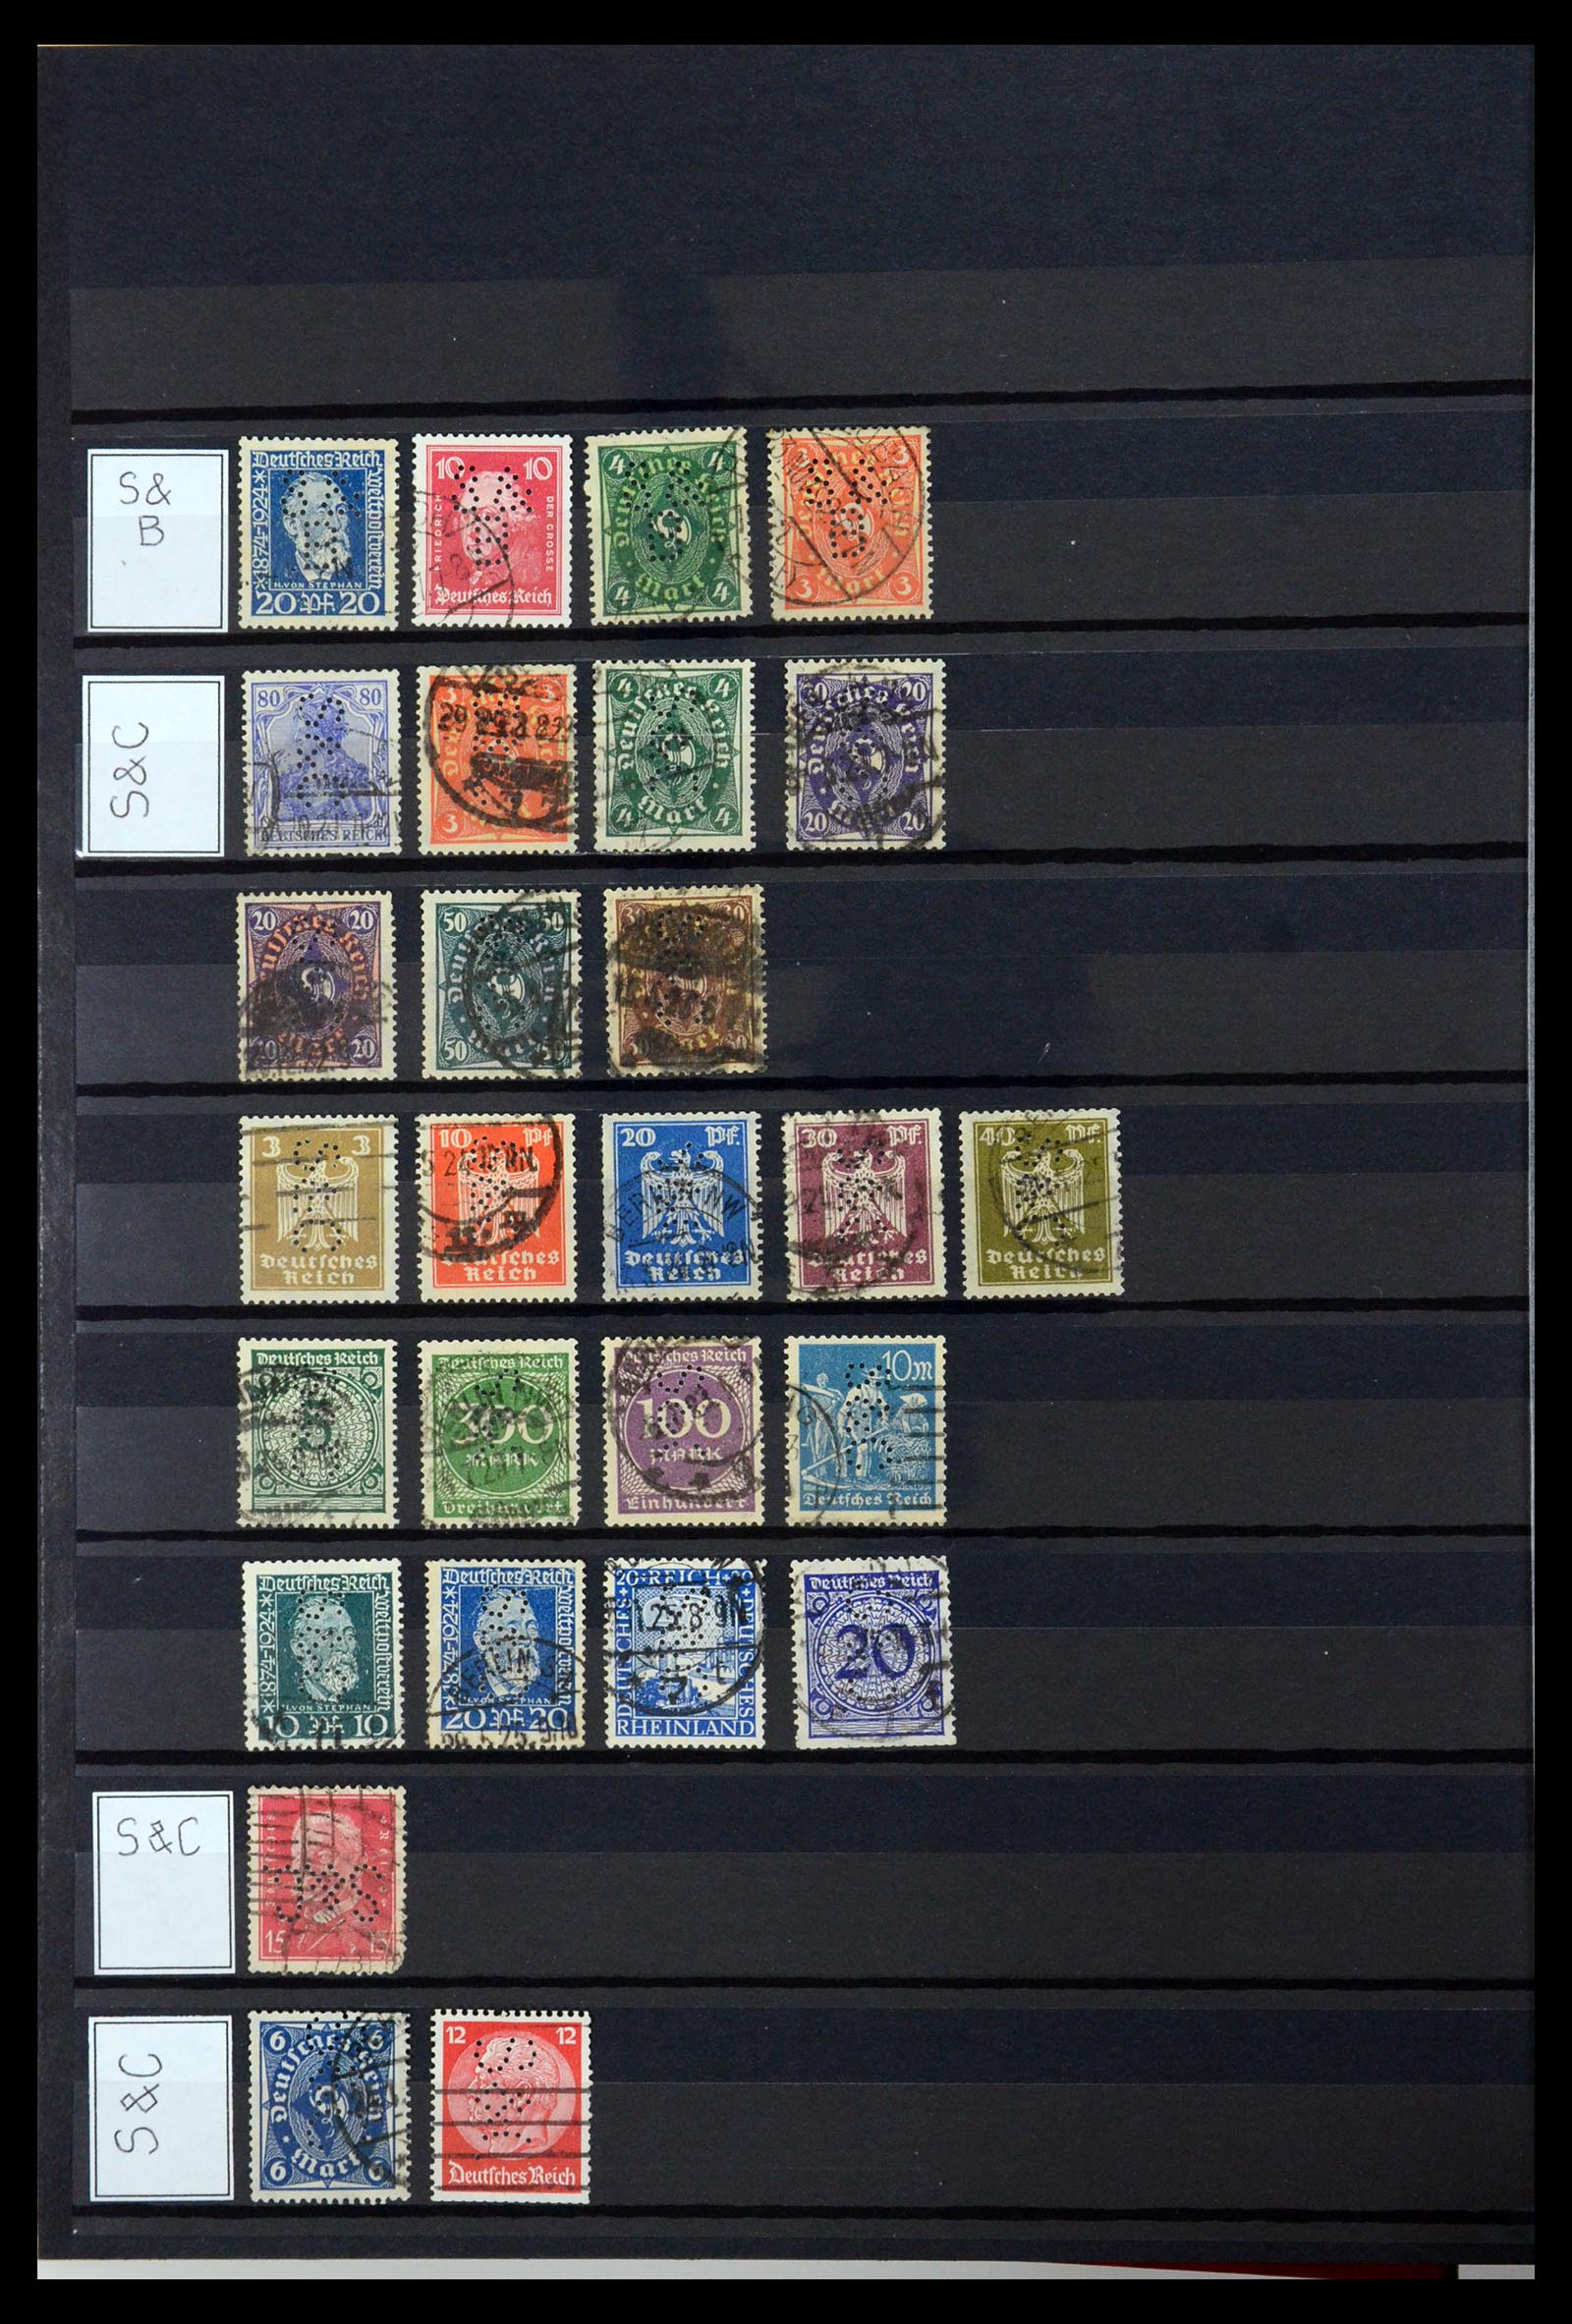 36405 303 - Stamp collection 36405 German Reich perfins 1880-1945.